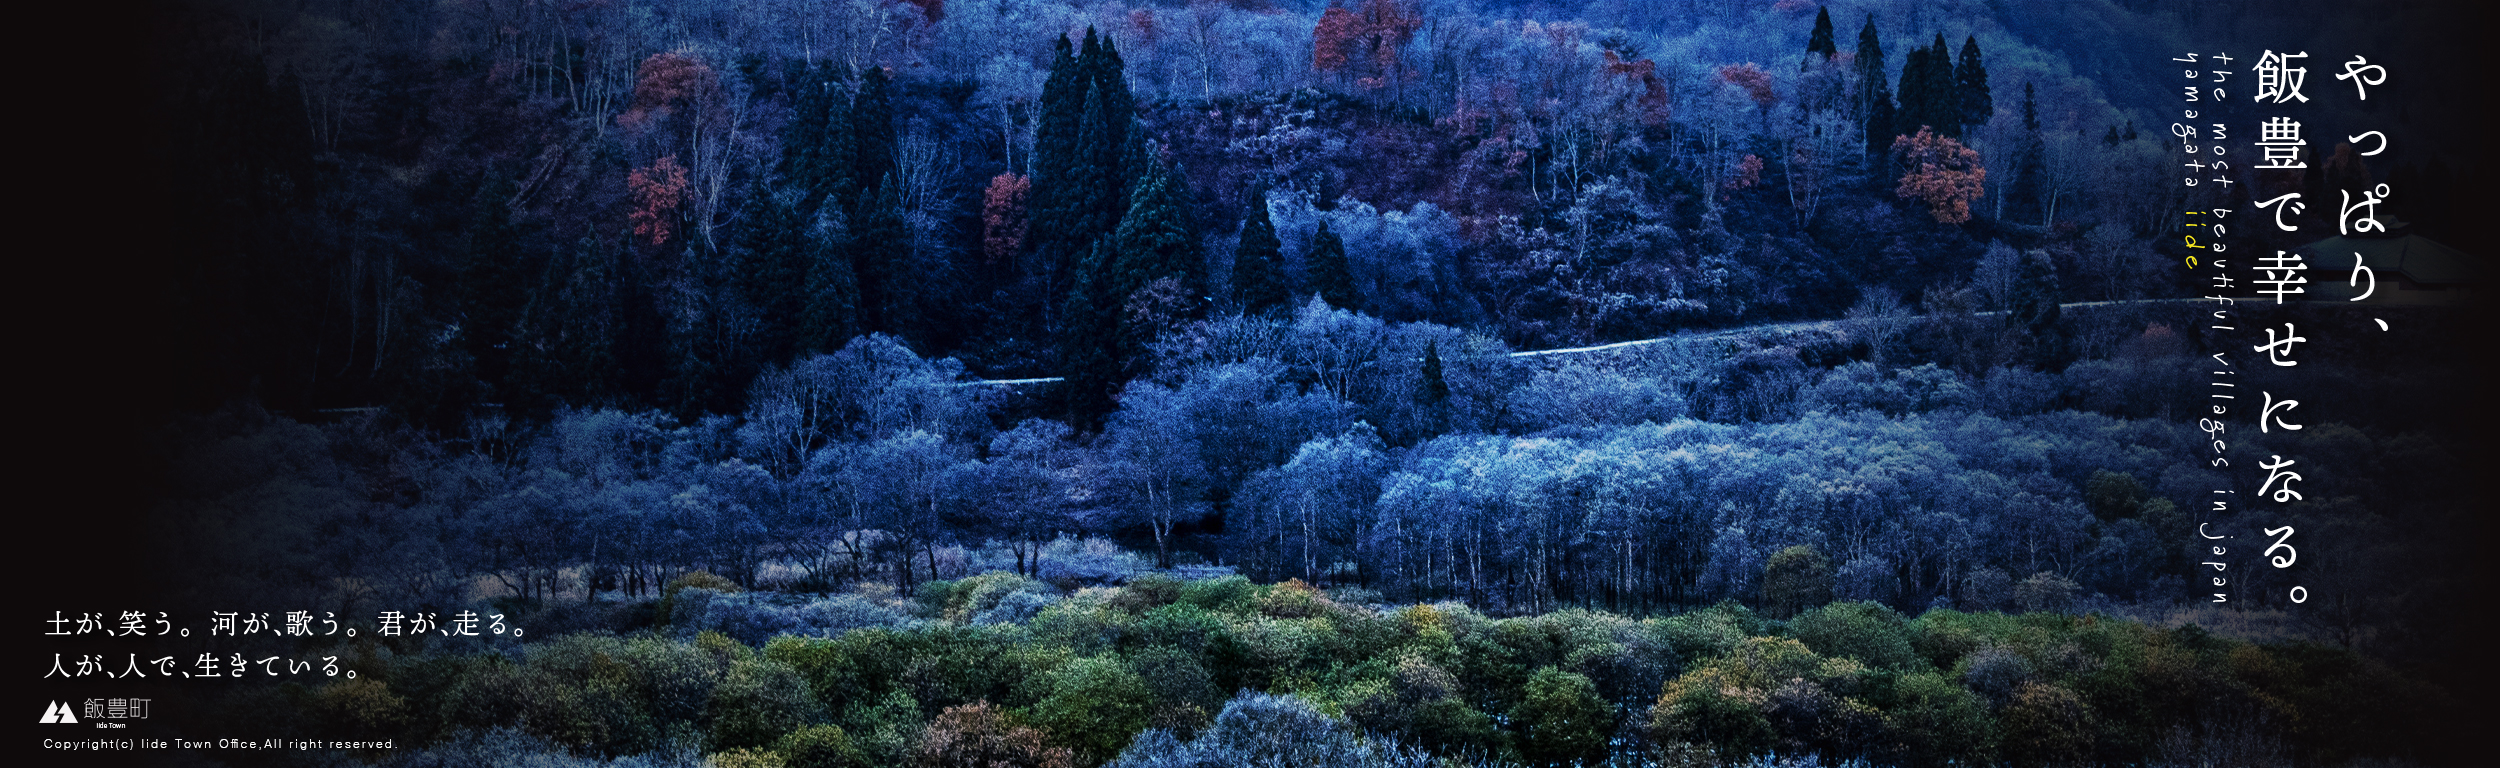 飯豊町山の風景スライドバナー画像